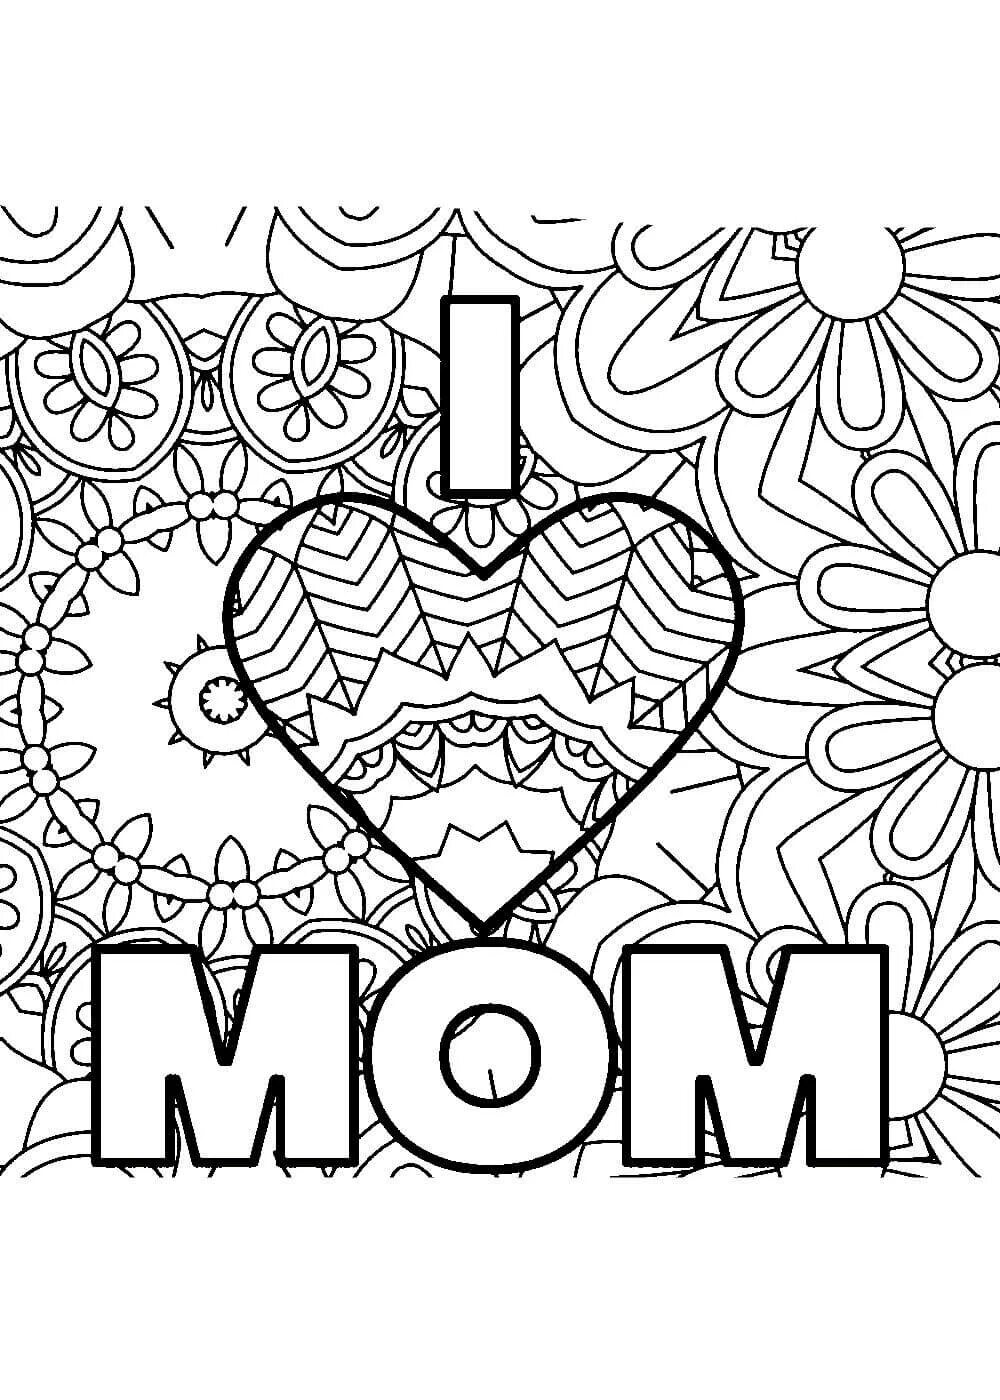 Распечатать маме на день рождения. Раскраска с днем рождения мама. Раскраска "с днем рождения!". Раскраска откритка для мама. Распечатай раскраску для мамы на день рождения.